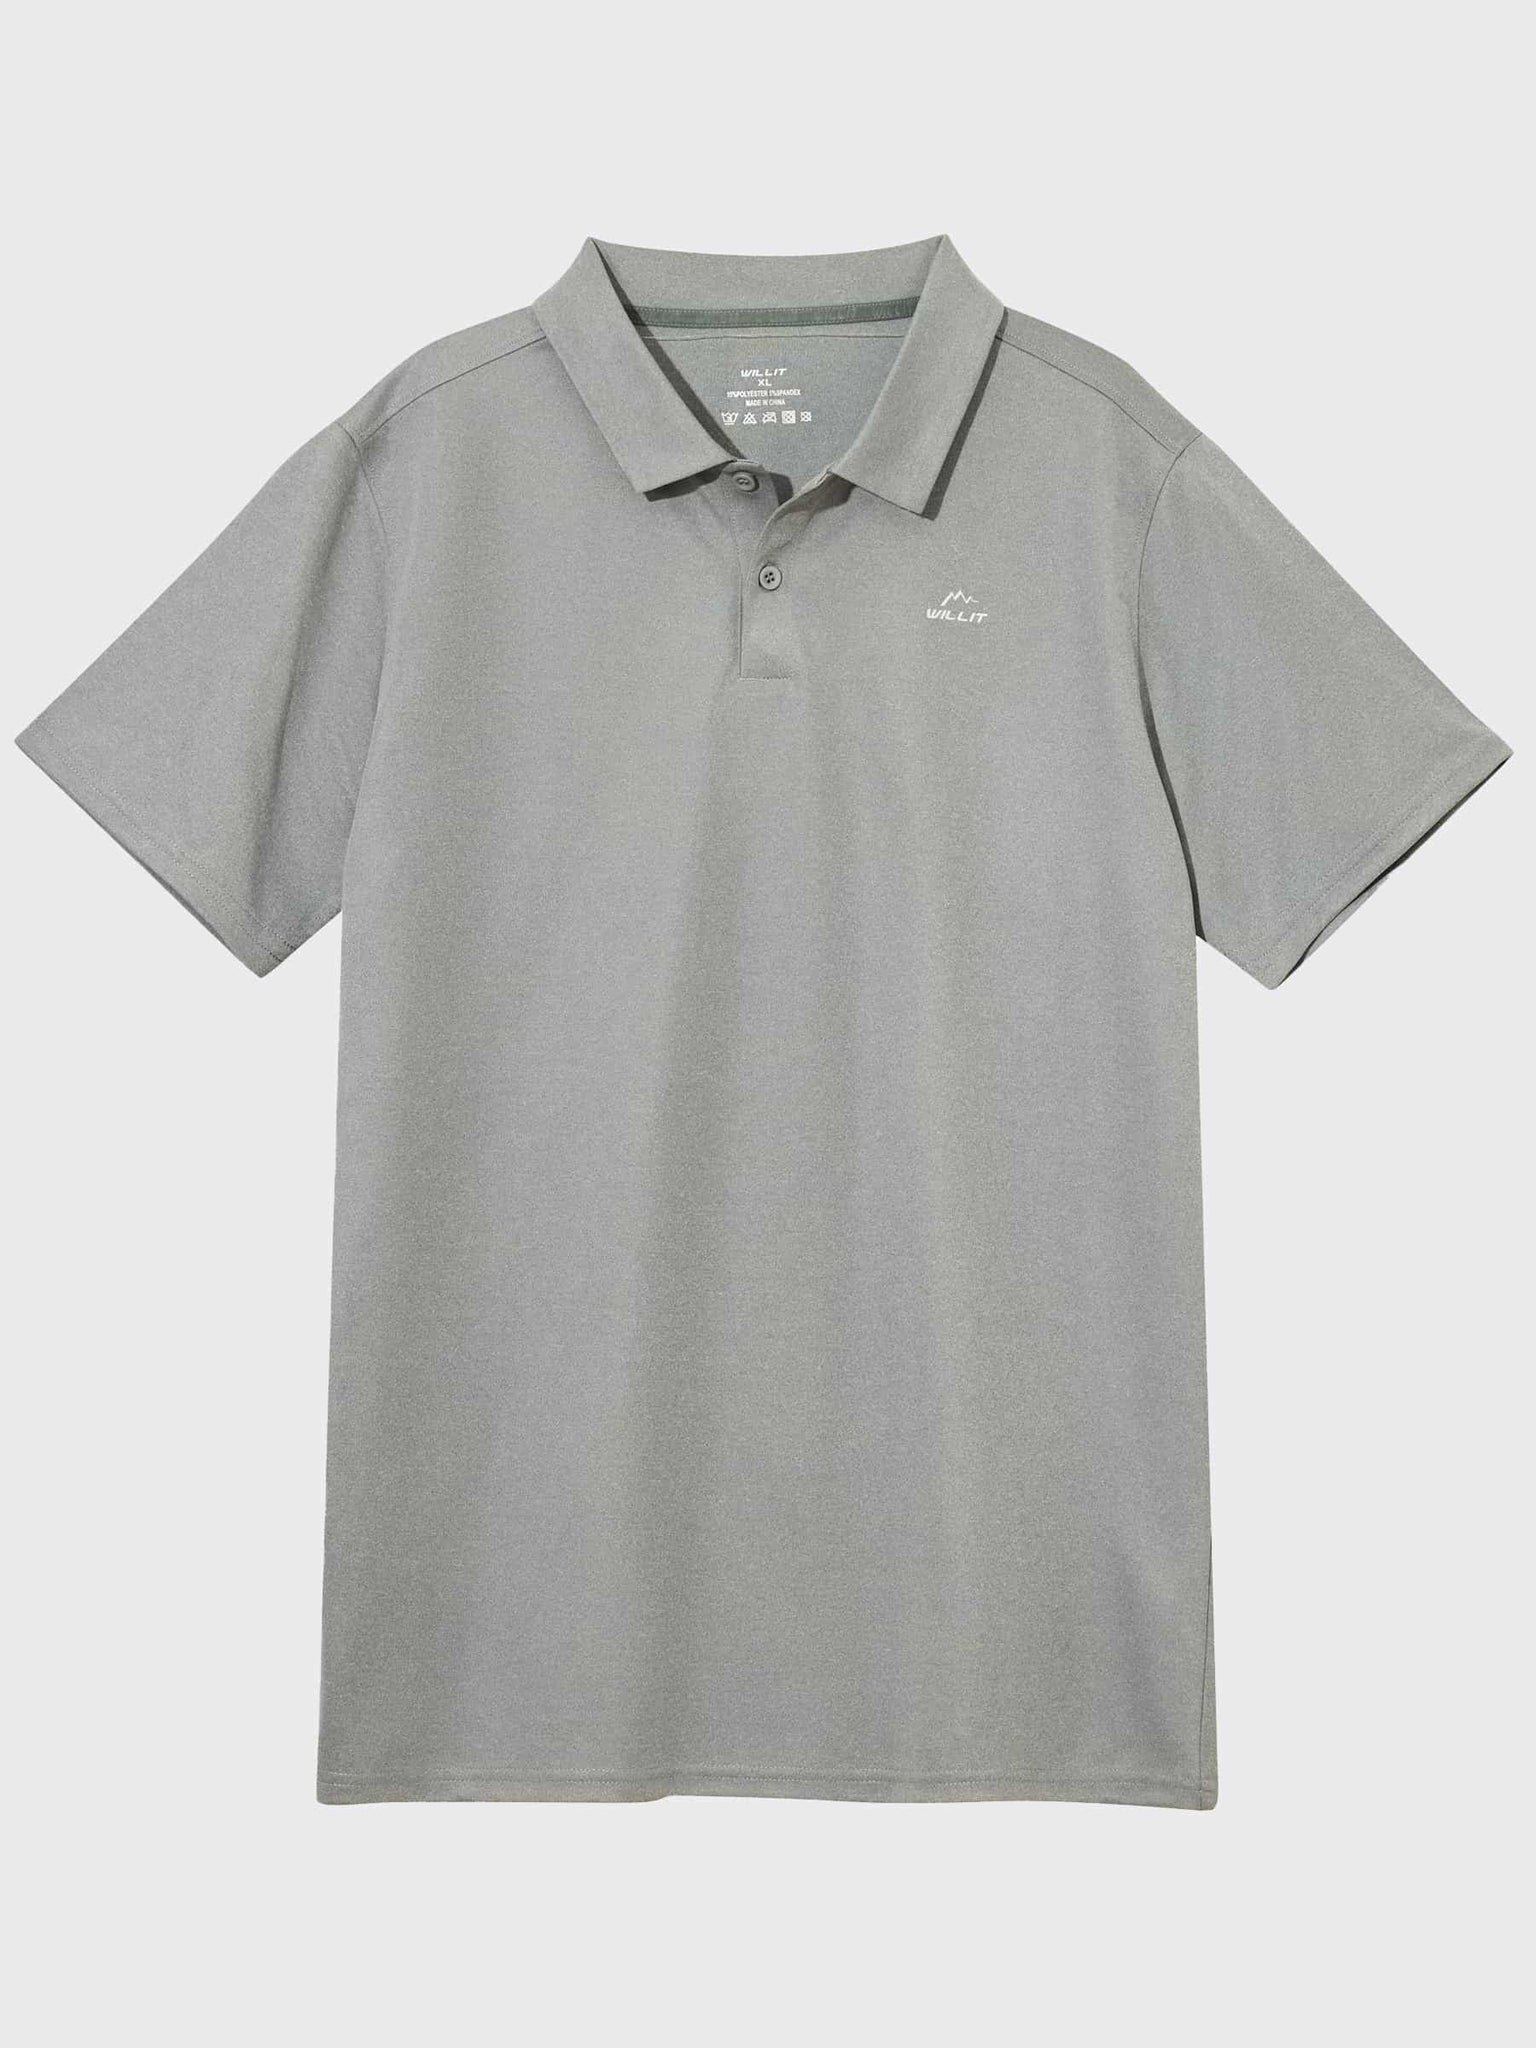 Youth Golf Polo Sun Shirts_Gray_laydown4